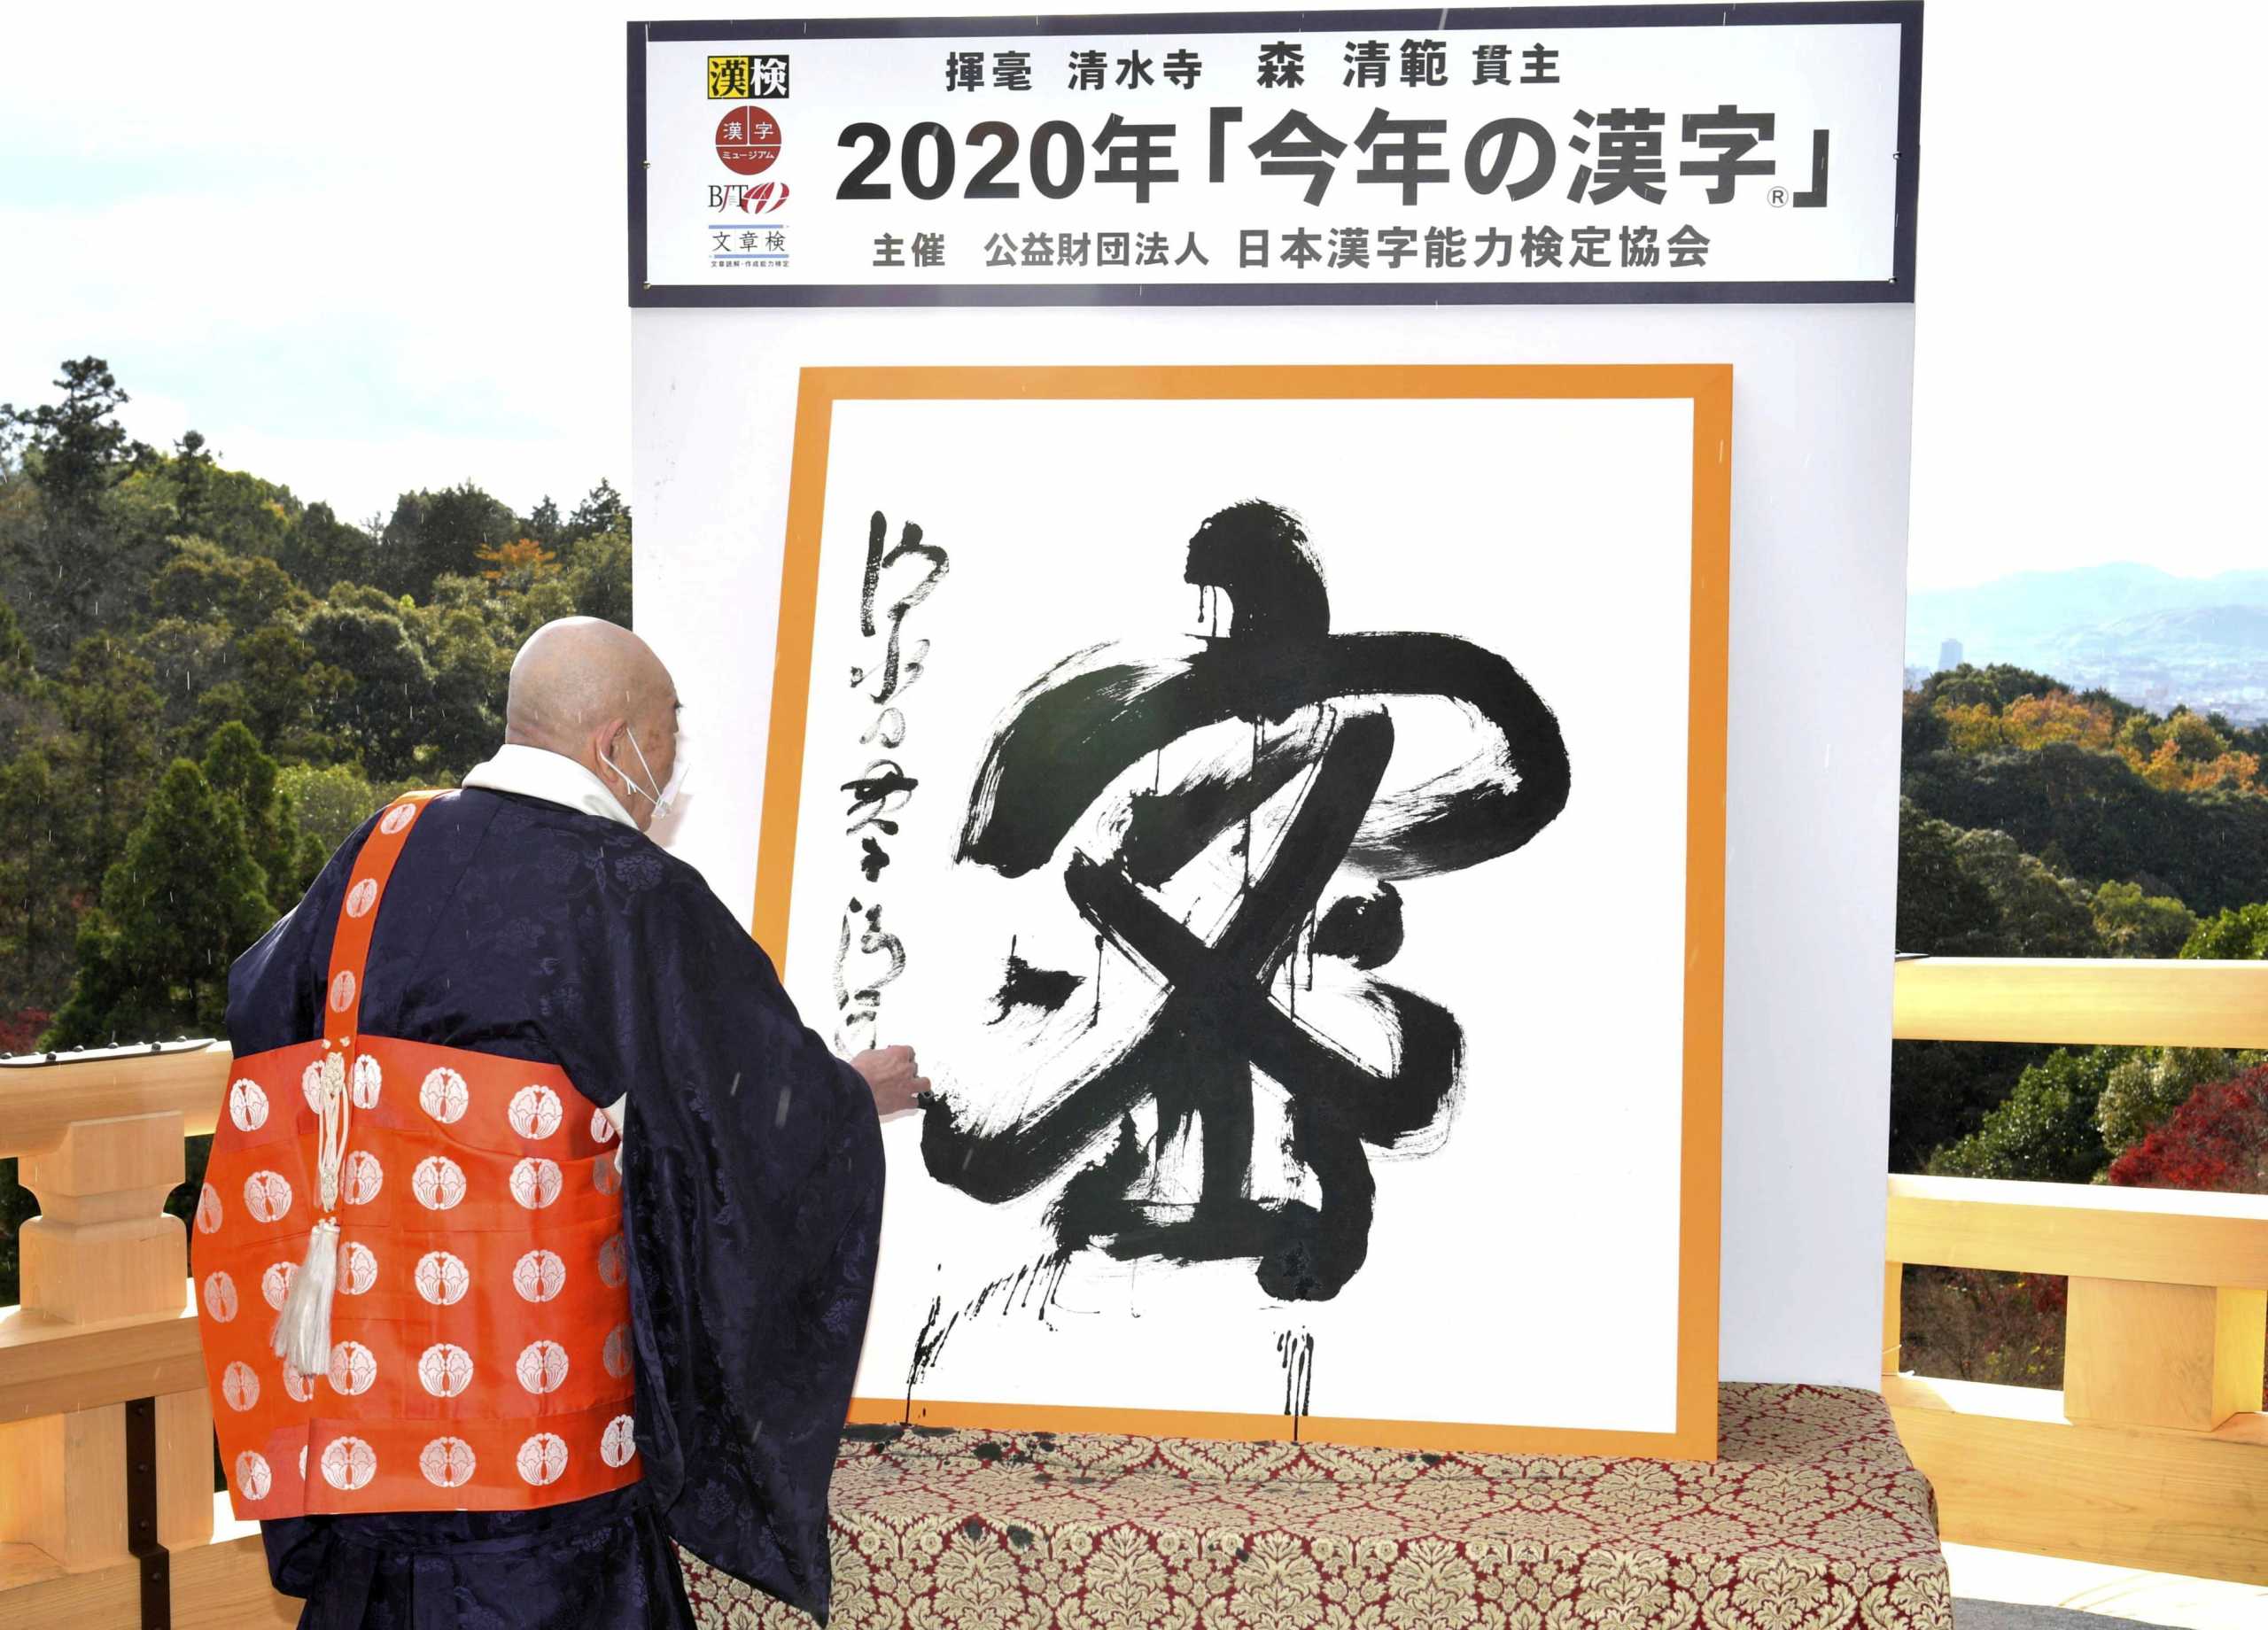 Ιαπωνία: Η δημοφιλέστερη λέξη του 2020 έγινε έμπνευση για κόμιξ, μάνγκα και video game